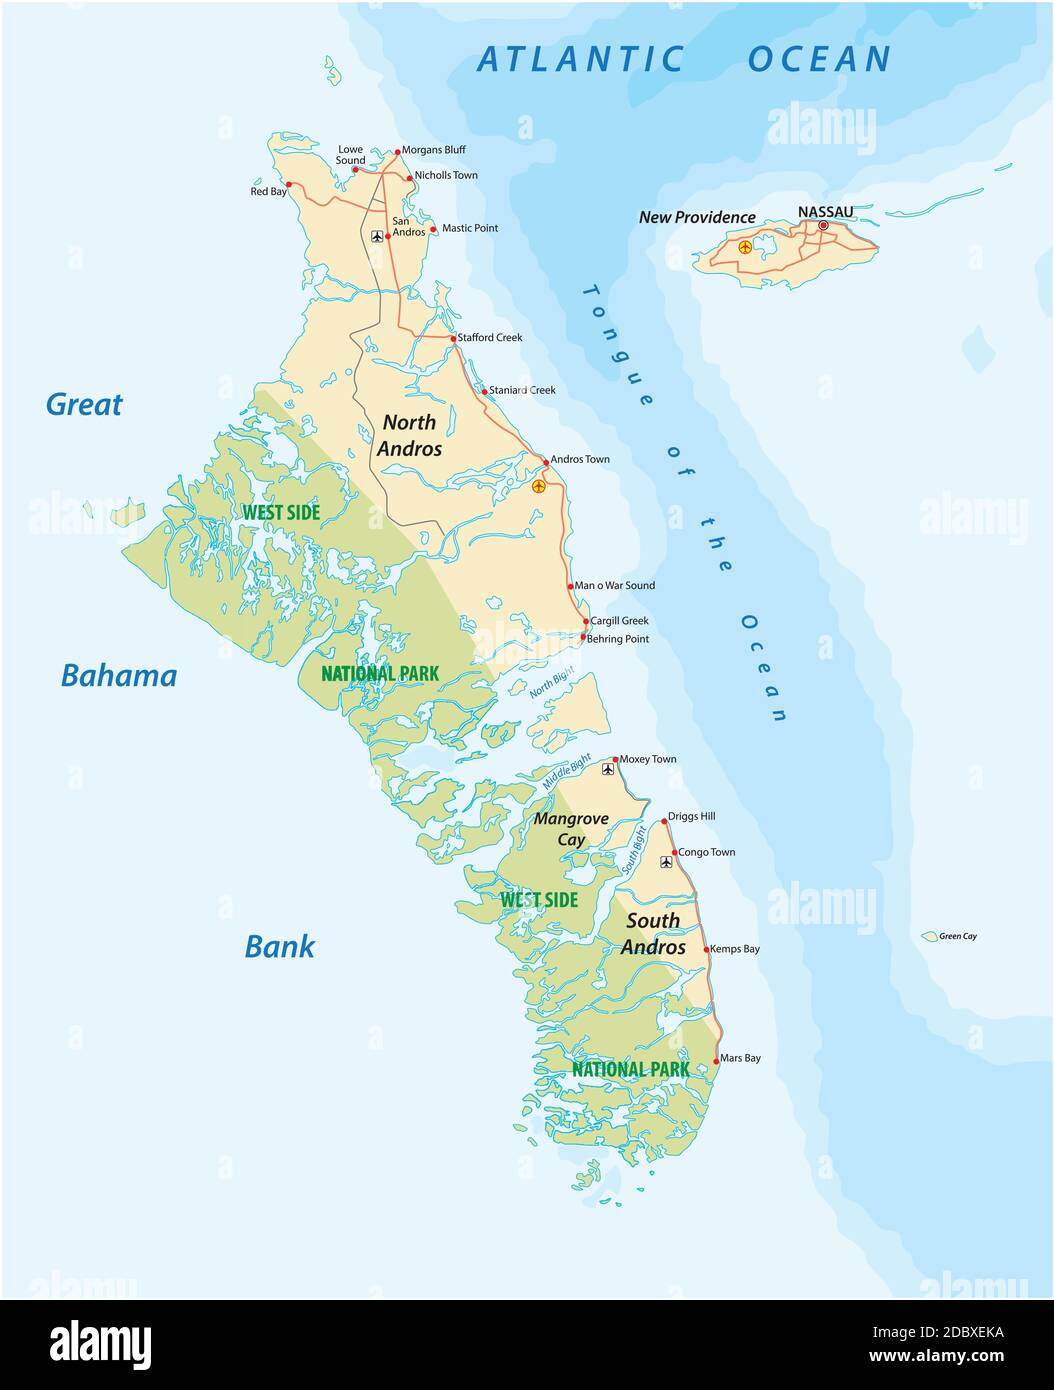 Carte vectorielle de l'île d'Andros et de New Providence, Bahamas Illustration de Vecteur